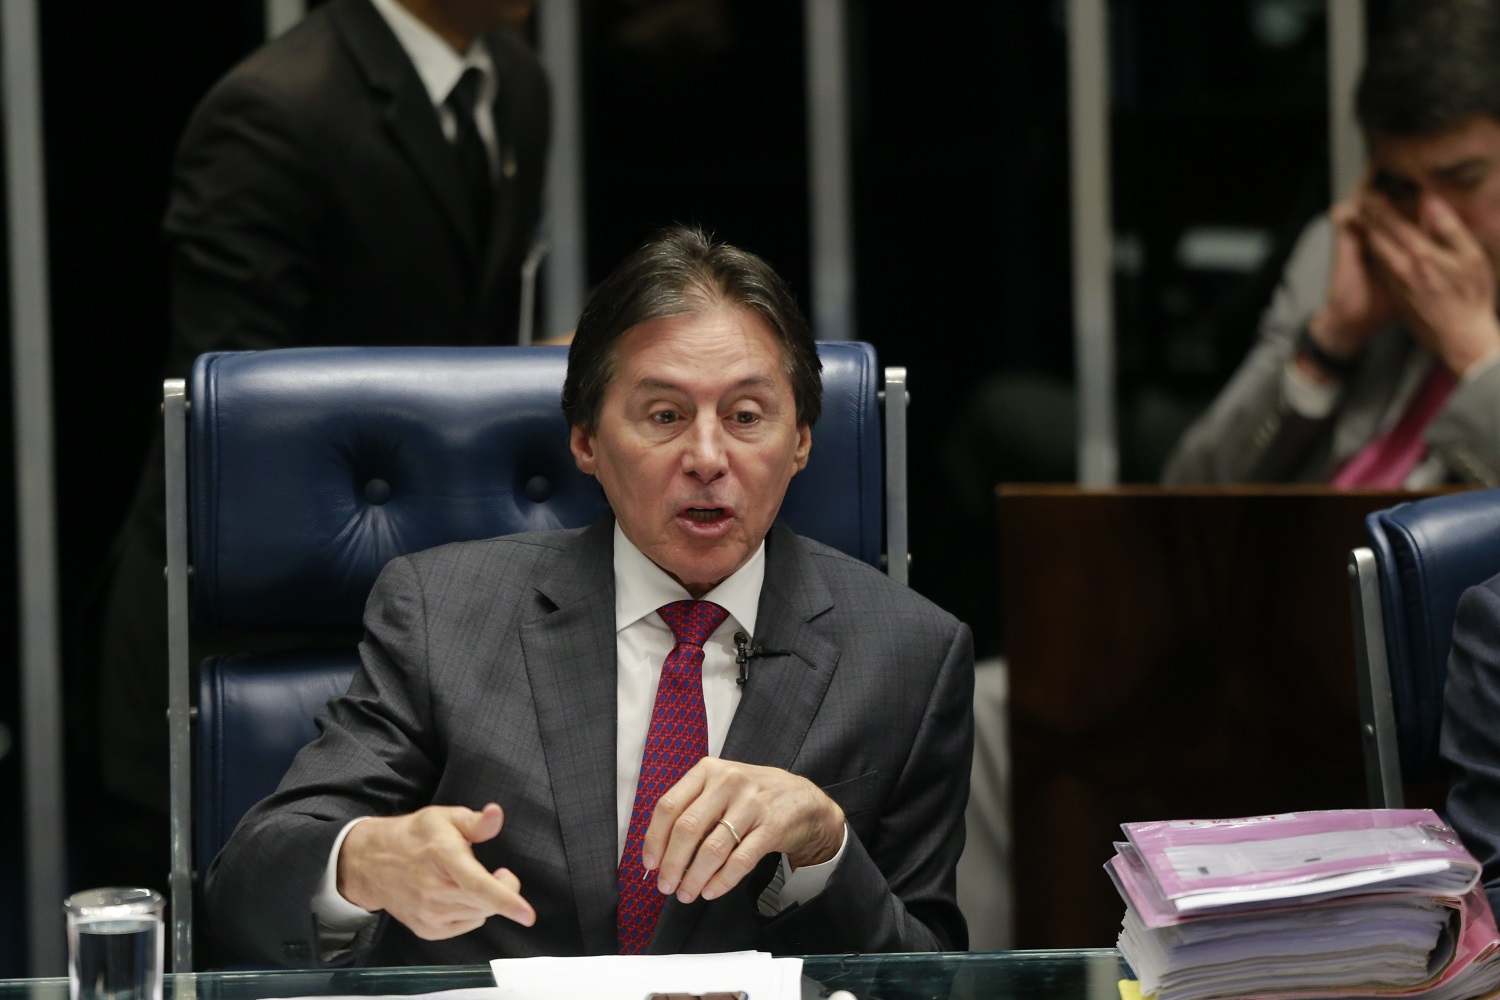 Senador Eunício Oliveira